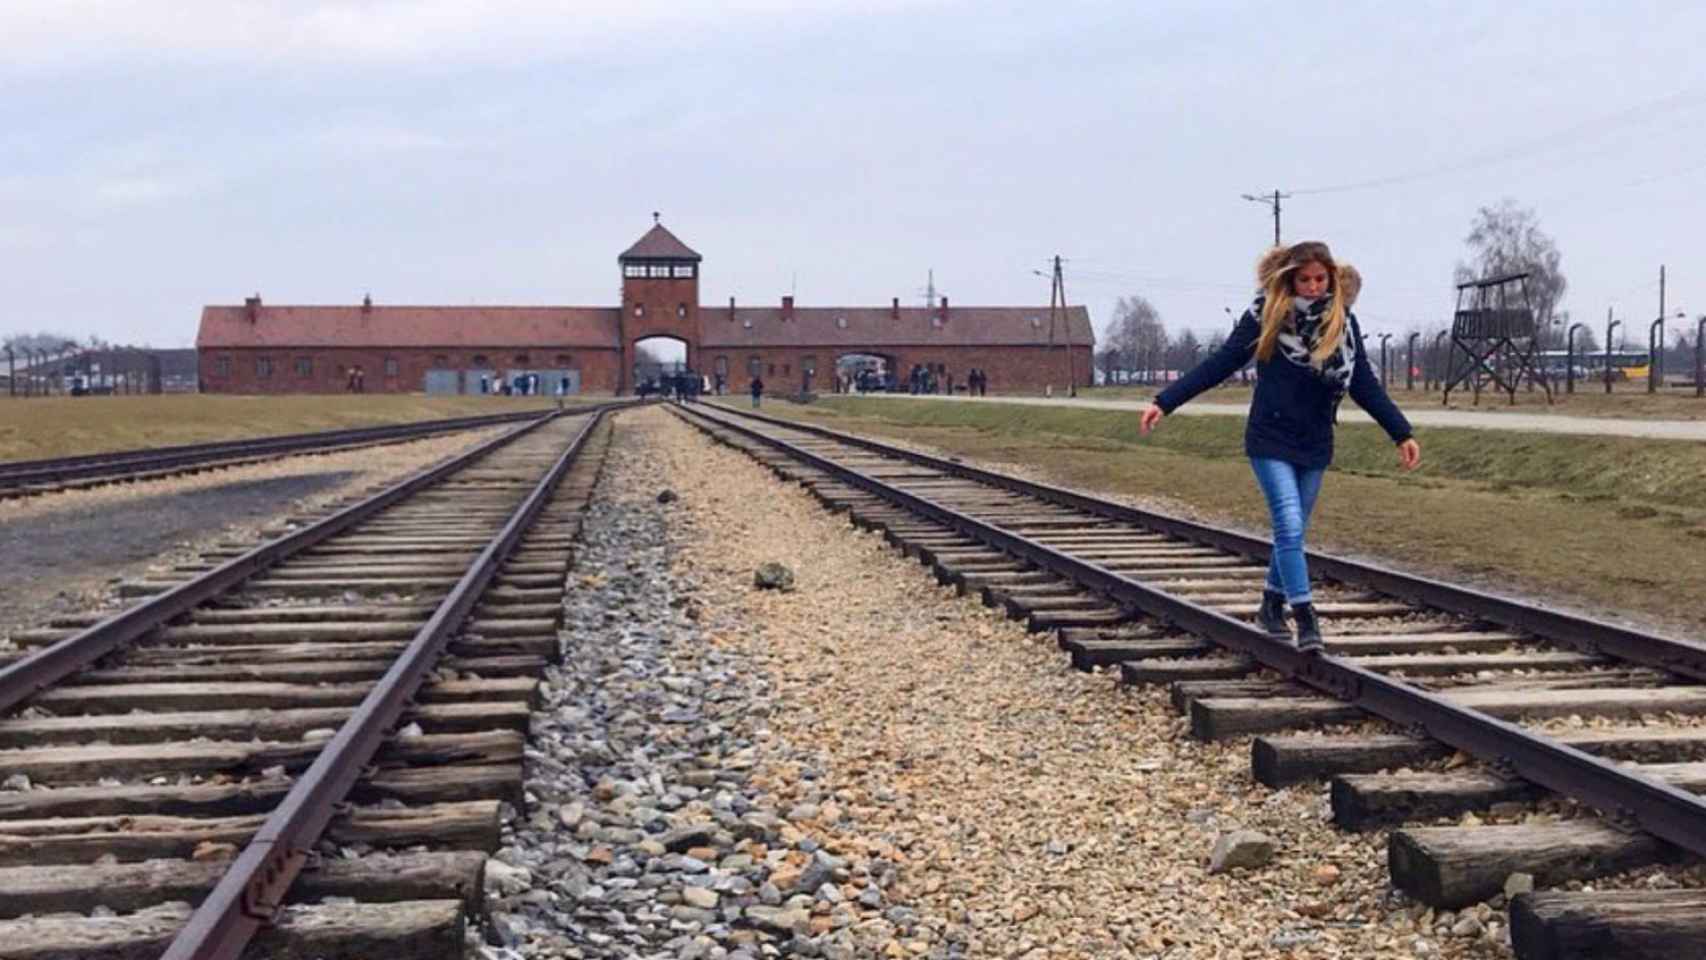 Fotografía facilitada por el Memorial de Auschwitz.